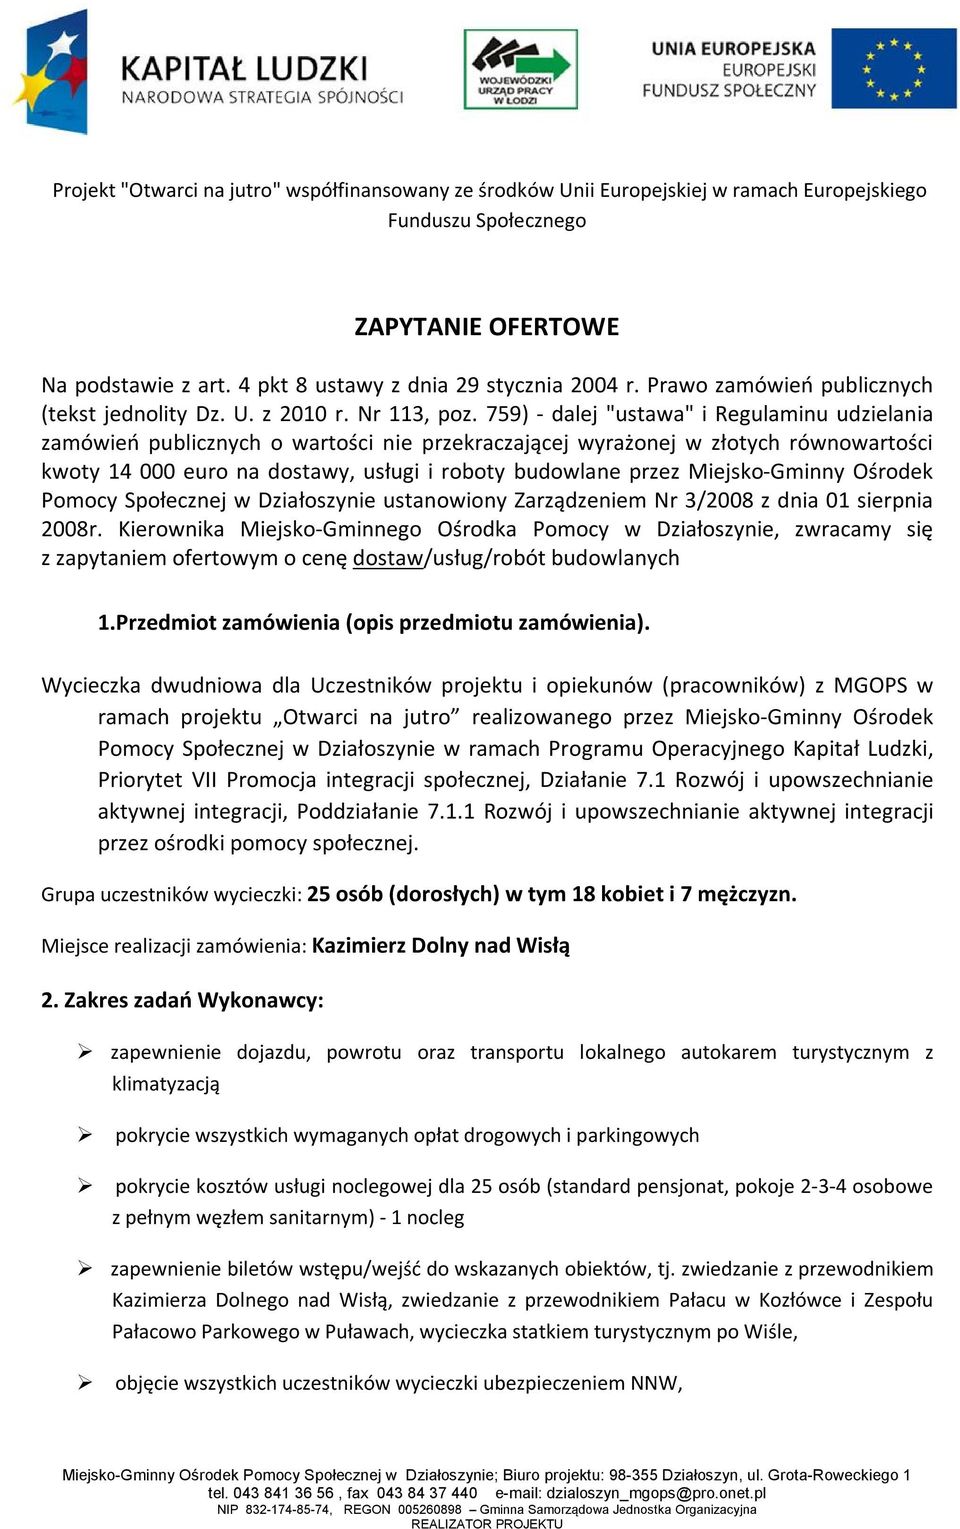 Miejsko-Gminny Ośrodek Pomocy Społecznej w Działoszynie ustanowiony Zarządzeniem Nr 3/2008 z dnia 01 sierpnia 2008r.